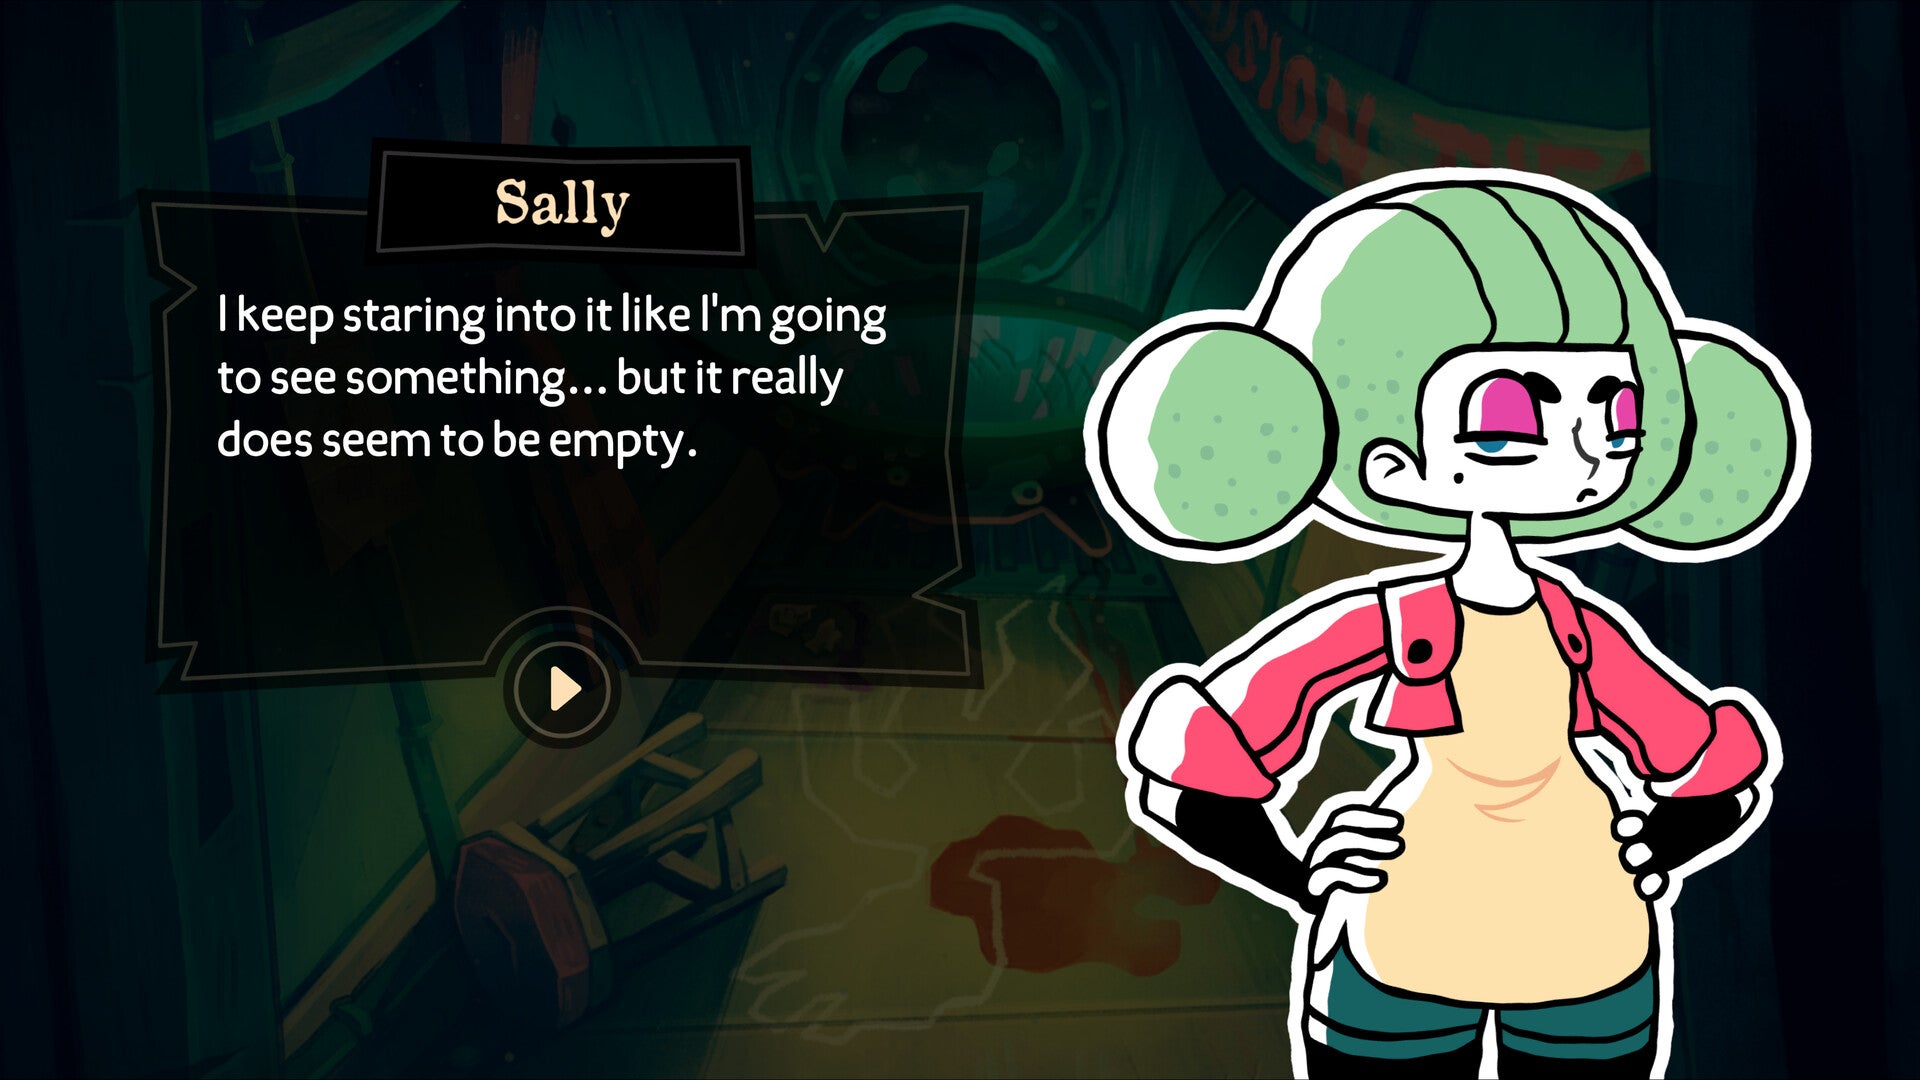 Le personnage Sally aux cheveux verts vifs nous dit qu'elle peut continuer à fixer l'environnement devant elle, mais qu'elle ne trouvera rien. Nous voyons une découpe illustrée de Sally et une boîte de dialogue à côté d'elle.